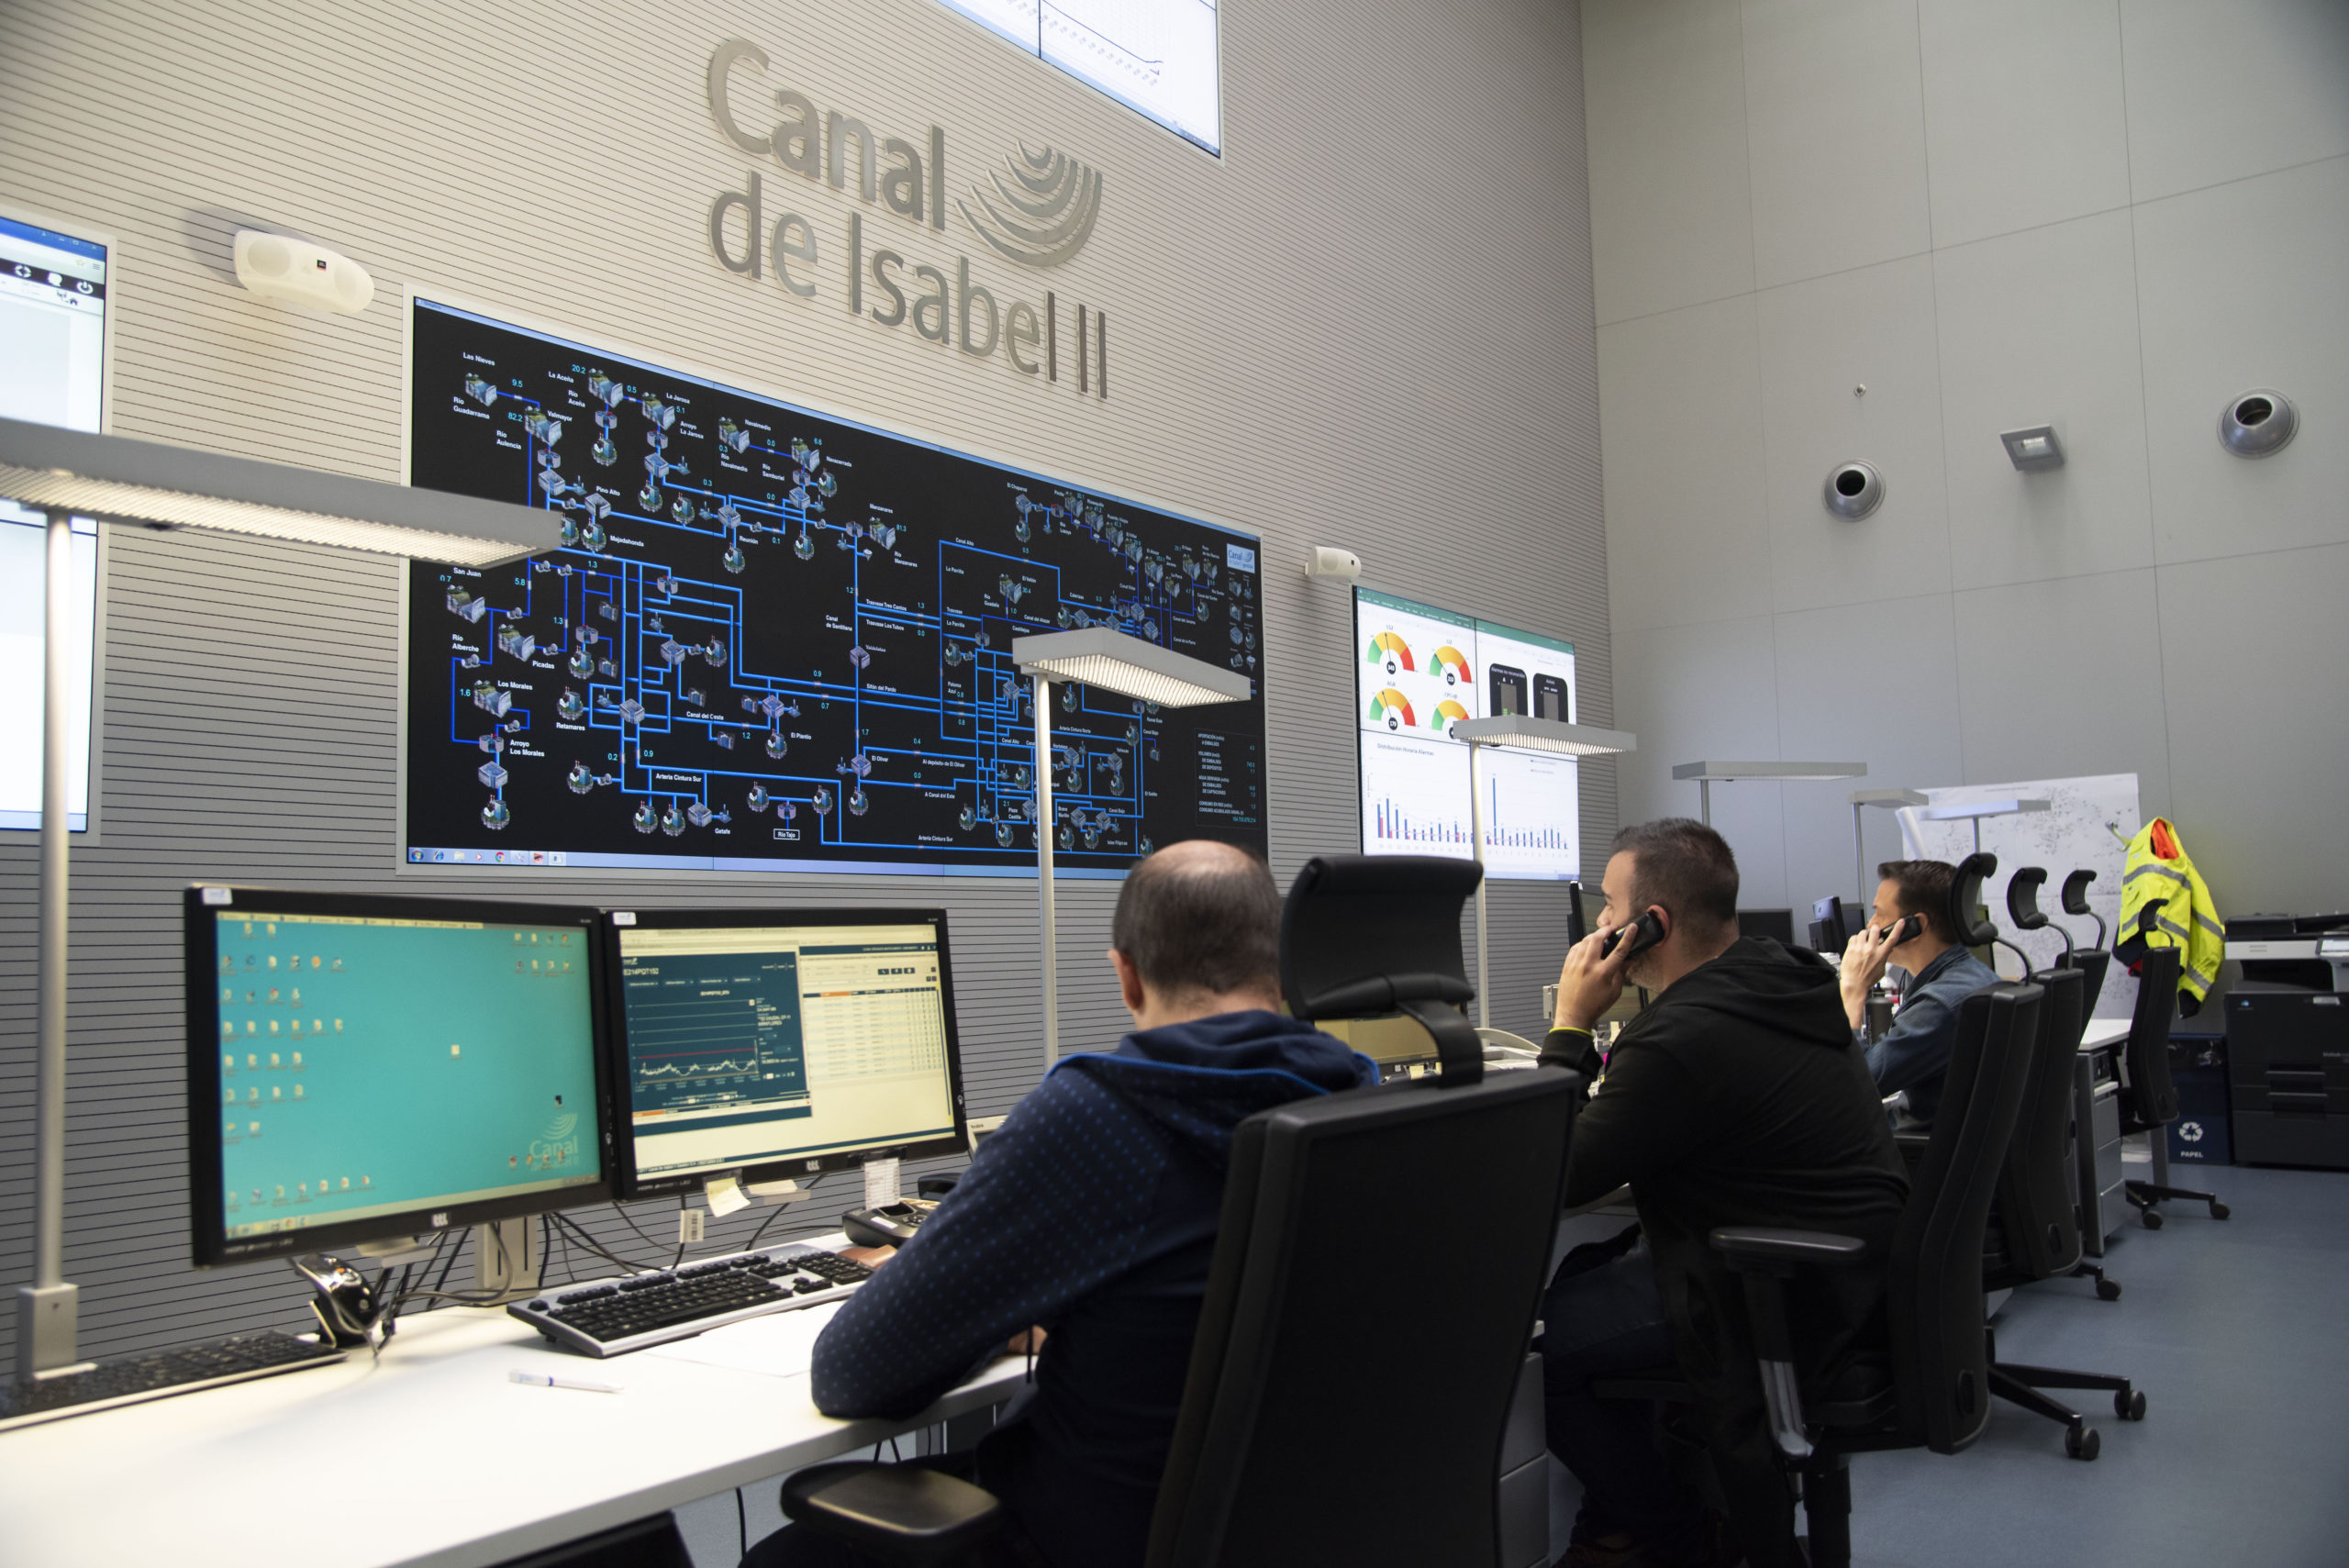 Canal de Isabel II evoluciona las Aplicaciones Corporativas sobre sus sistemas SAP